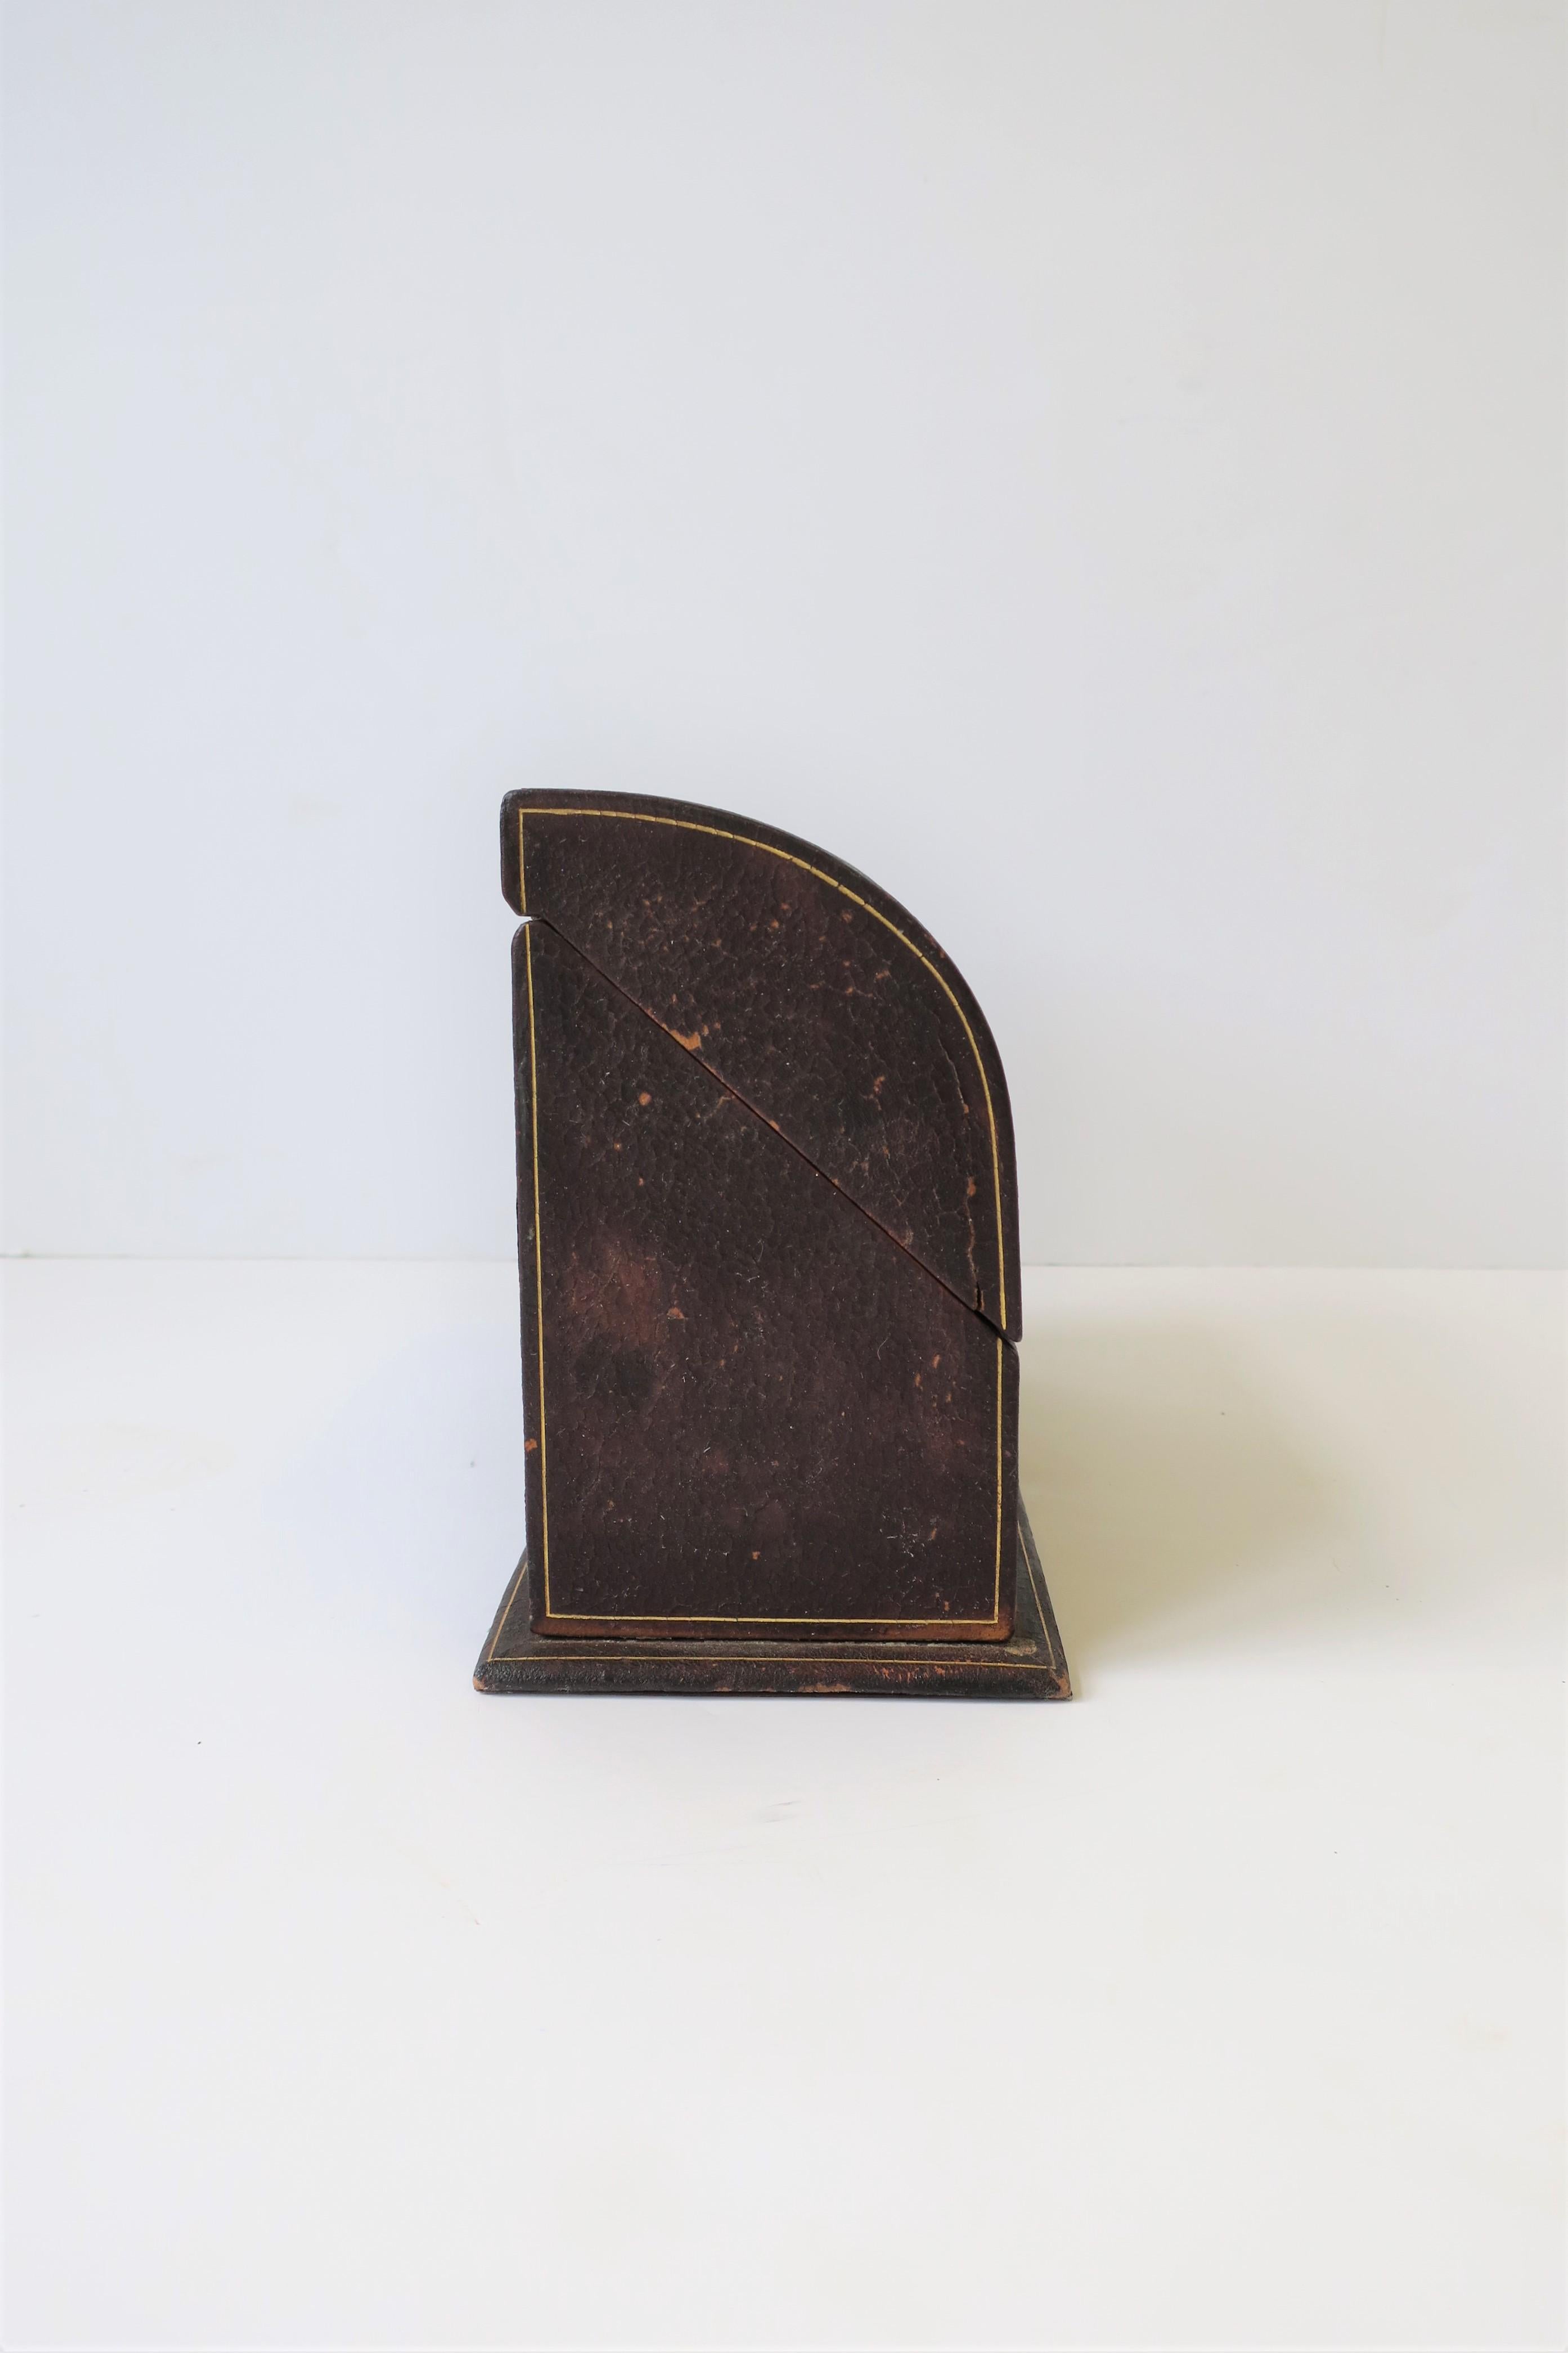 Brass Italian Leather Desk Letter Holder Box For Sale